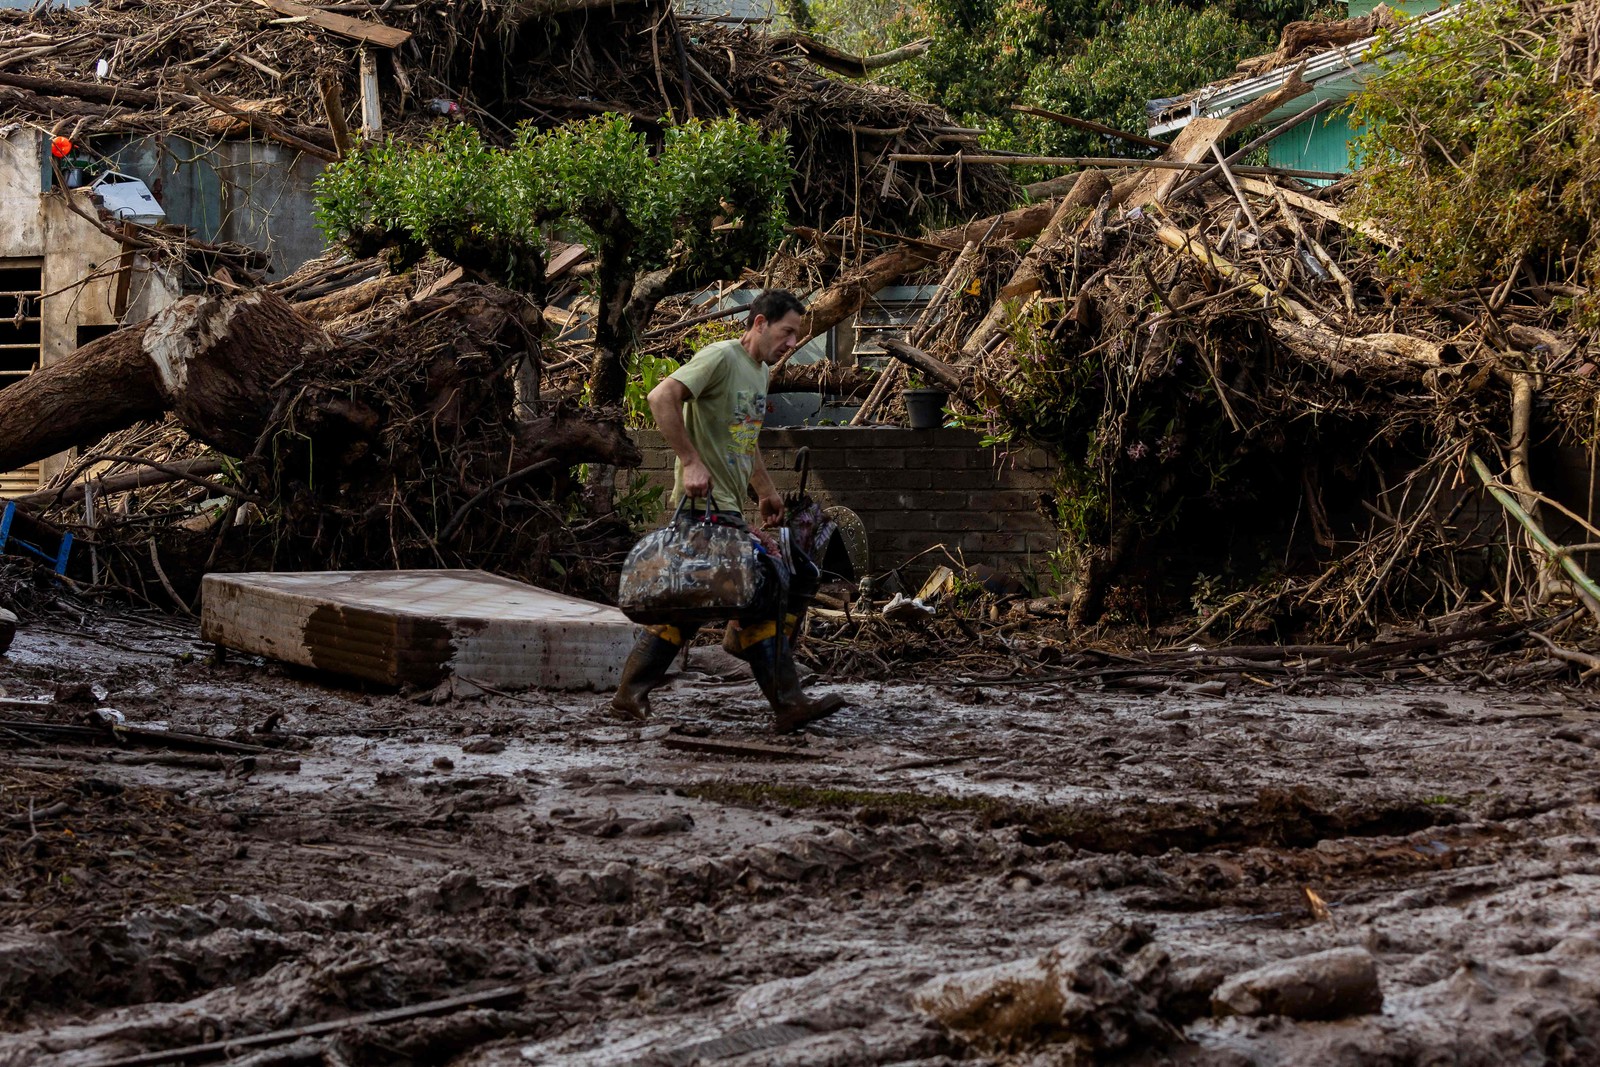 Um homem caminha com seus pertences por uma rua coberta de lama e detritos após passagem de ciclone em Muçum, Rio Grande do Sul — Foto: SILVIO ÁVILA/AFP